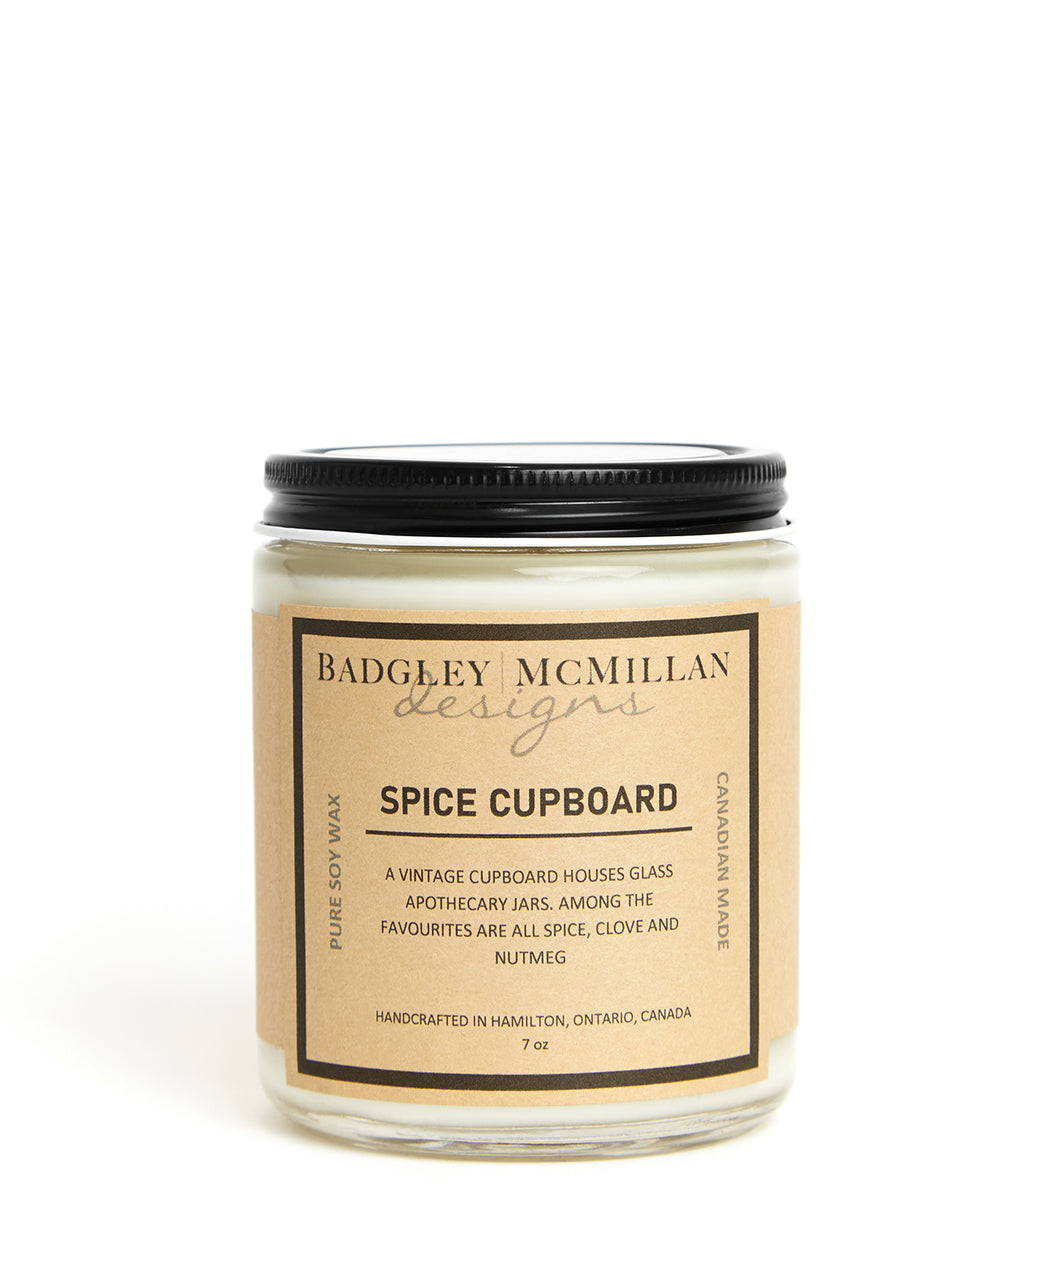 Spice Cupboard 7 oz Soy Jar Candle